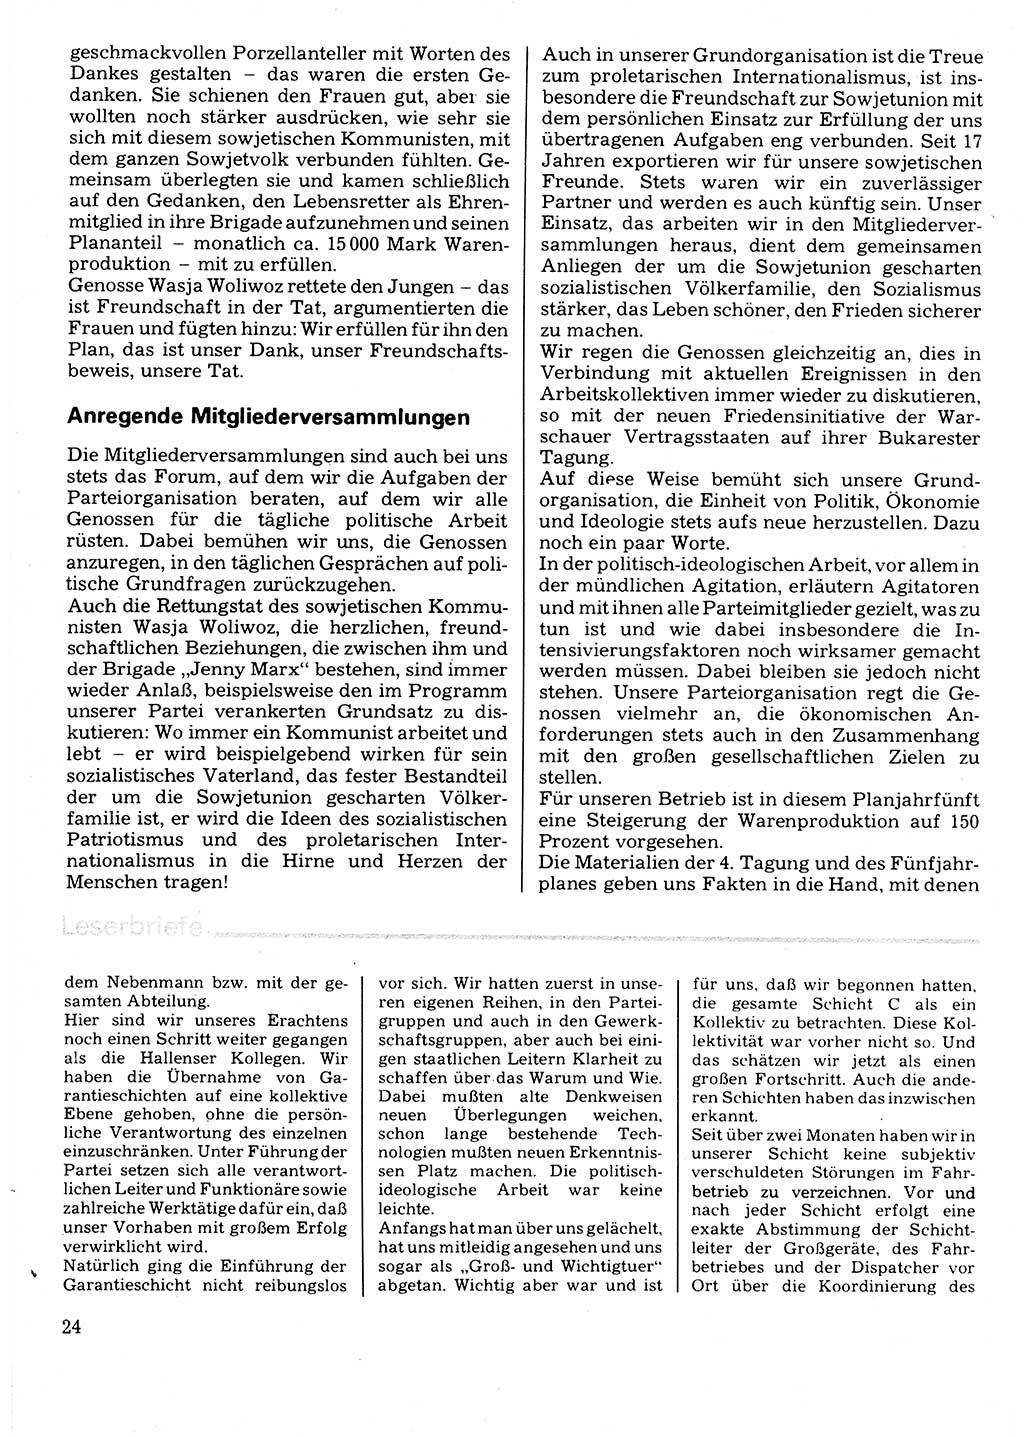 Neuer Weg (NW), Organ des Zentralkomitees (ZK) der SED (Sozialistische Einheitspartei Deutschlands) für Fragen des Parteilebens, 32. Jahrgang [Deutsche Demokratische Republik (DDR)] 1977, Seite 24 (NW ZK SED DDR 1977, S. 24)